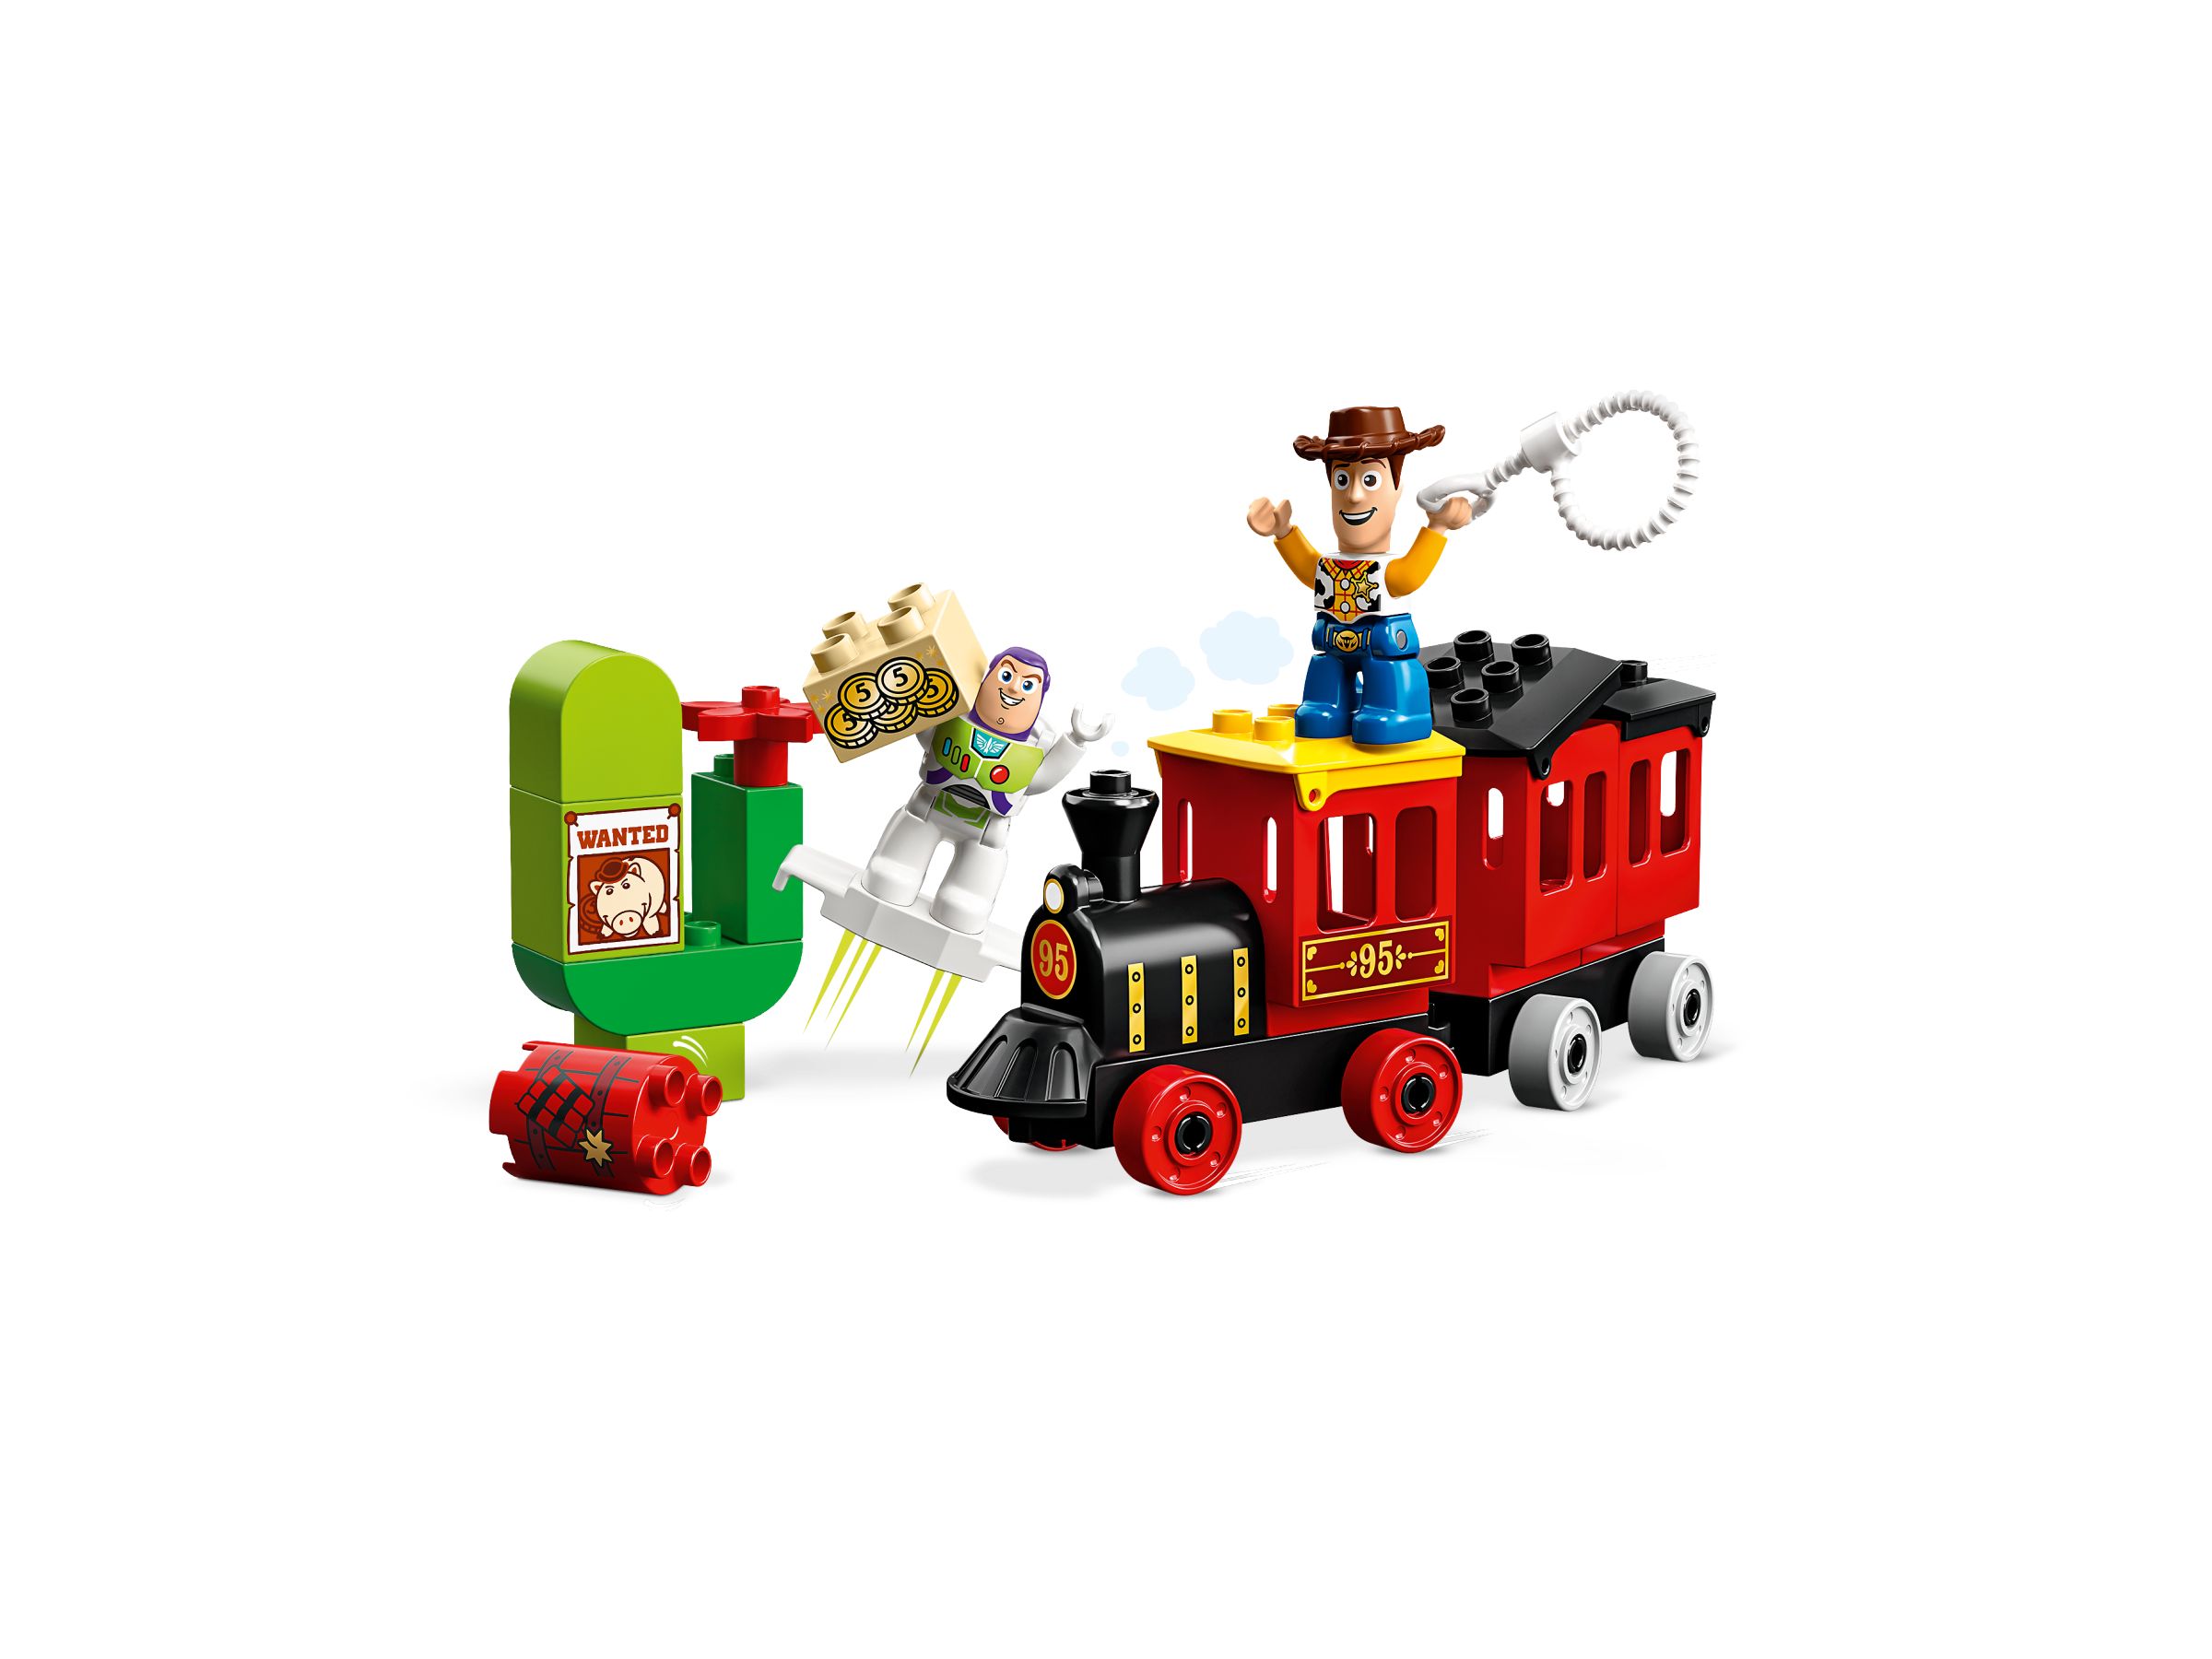 LEGO Duplo 10894 Toy-Story-Zug LEGO_10894_alt2.jpg